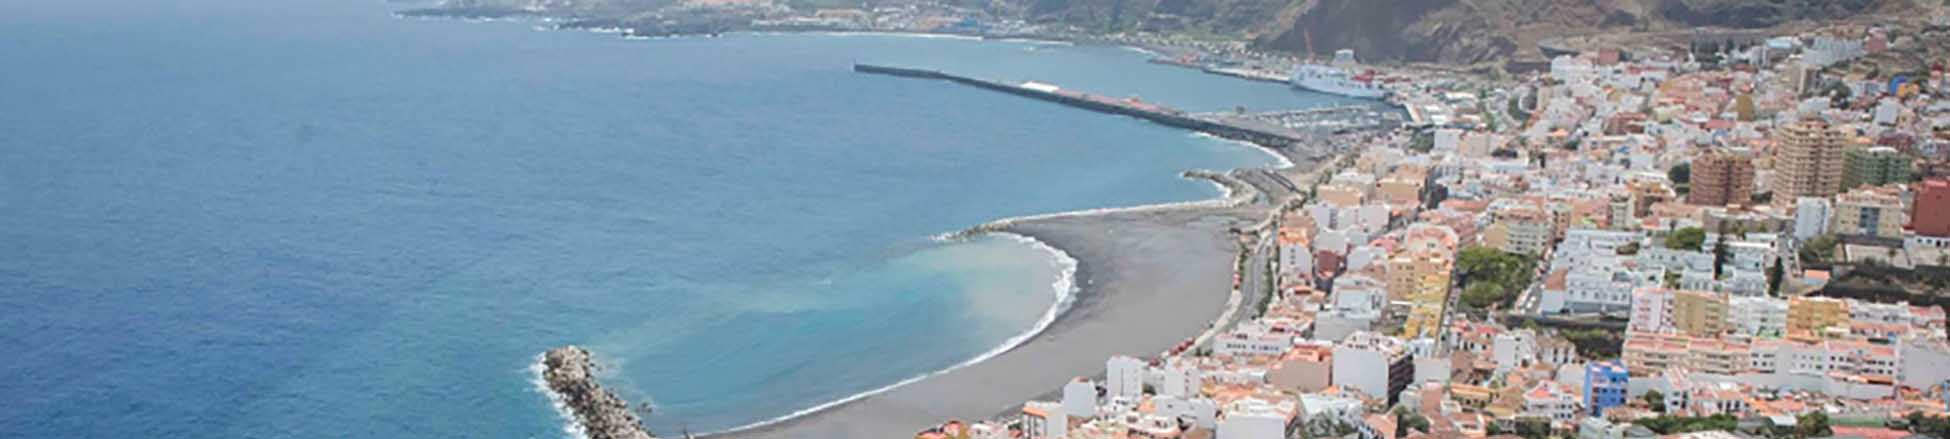 Image ressource du port de destination La Palma (S.C. de la Palma) pour l'itinéraire du ferry Tenerife (Los Cristianos) - La Palma (S.C. de la Palma)